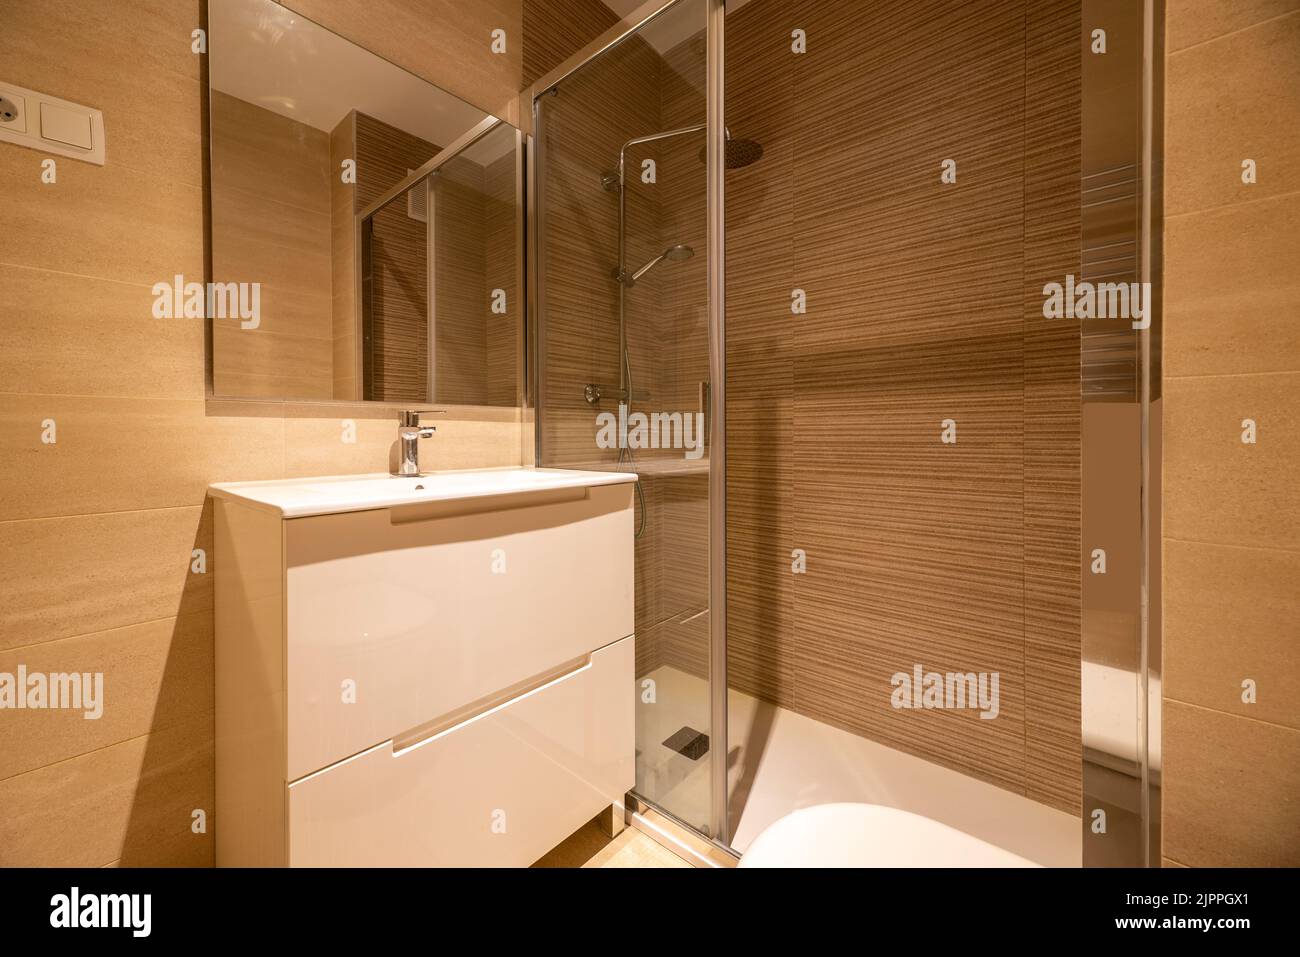 Salle de bains simple avec douche à l'italienne, miroir mural sans cadre, cabine de douche avec porte vitrée coulissante et armoire blanche avec tiroirs Banque D'Images